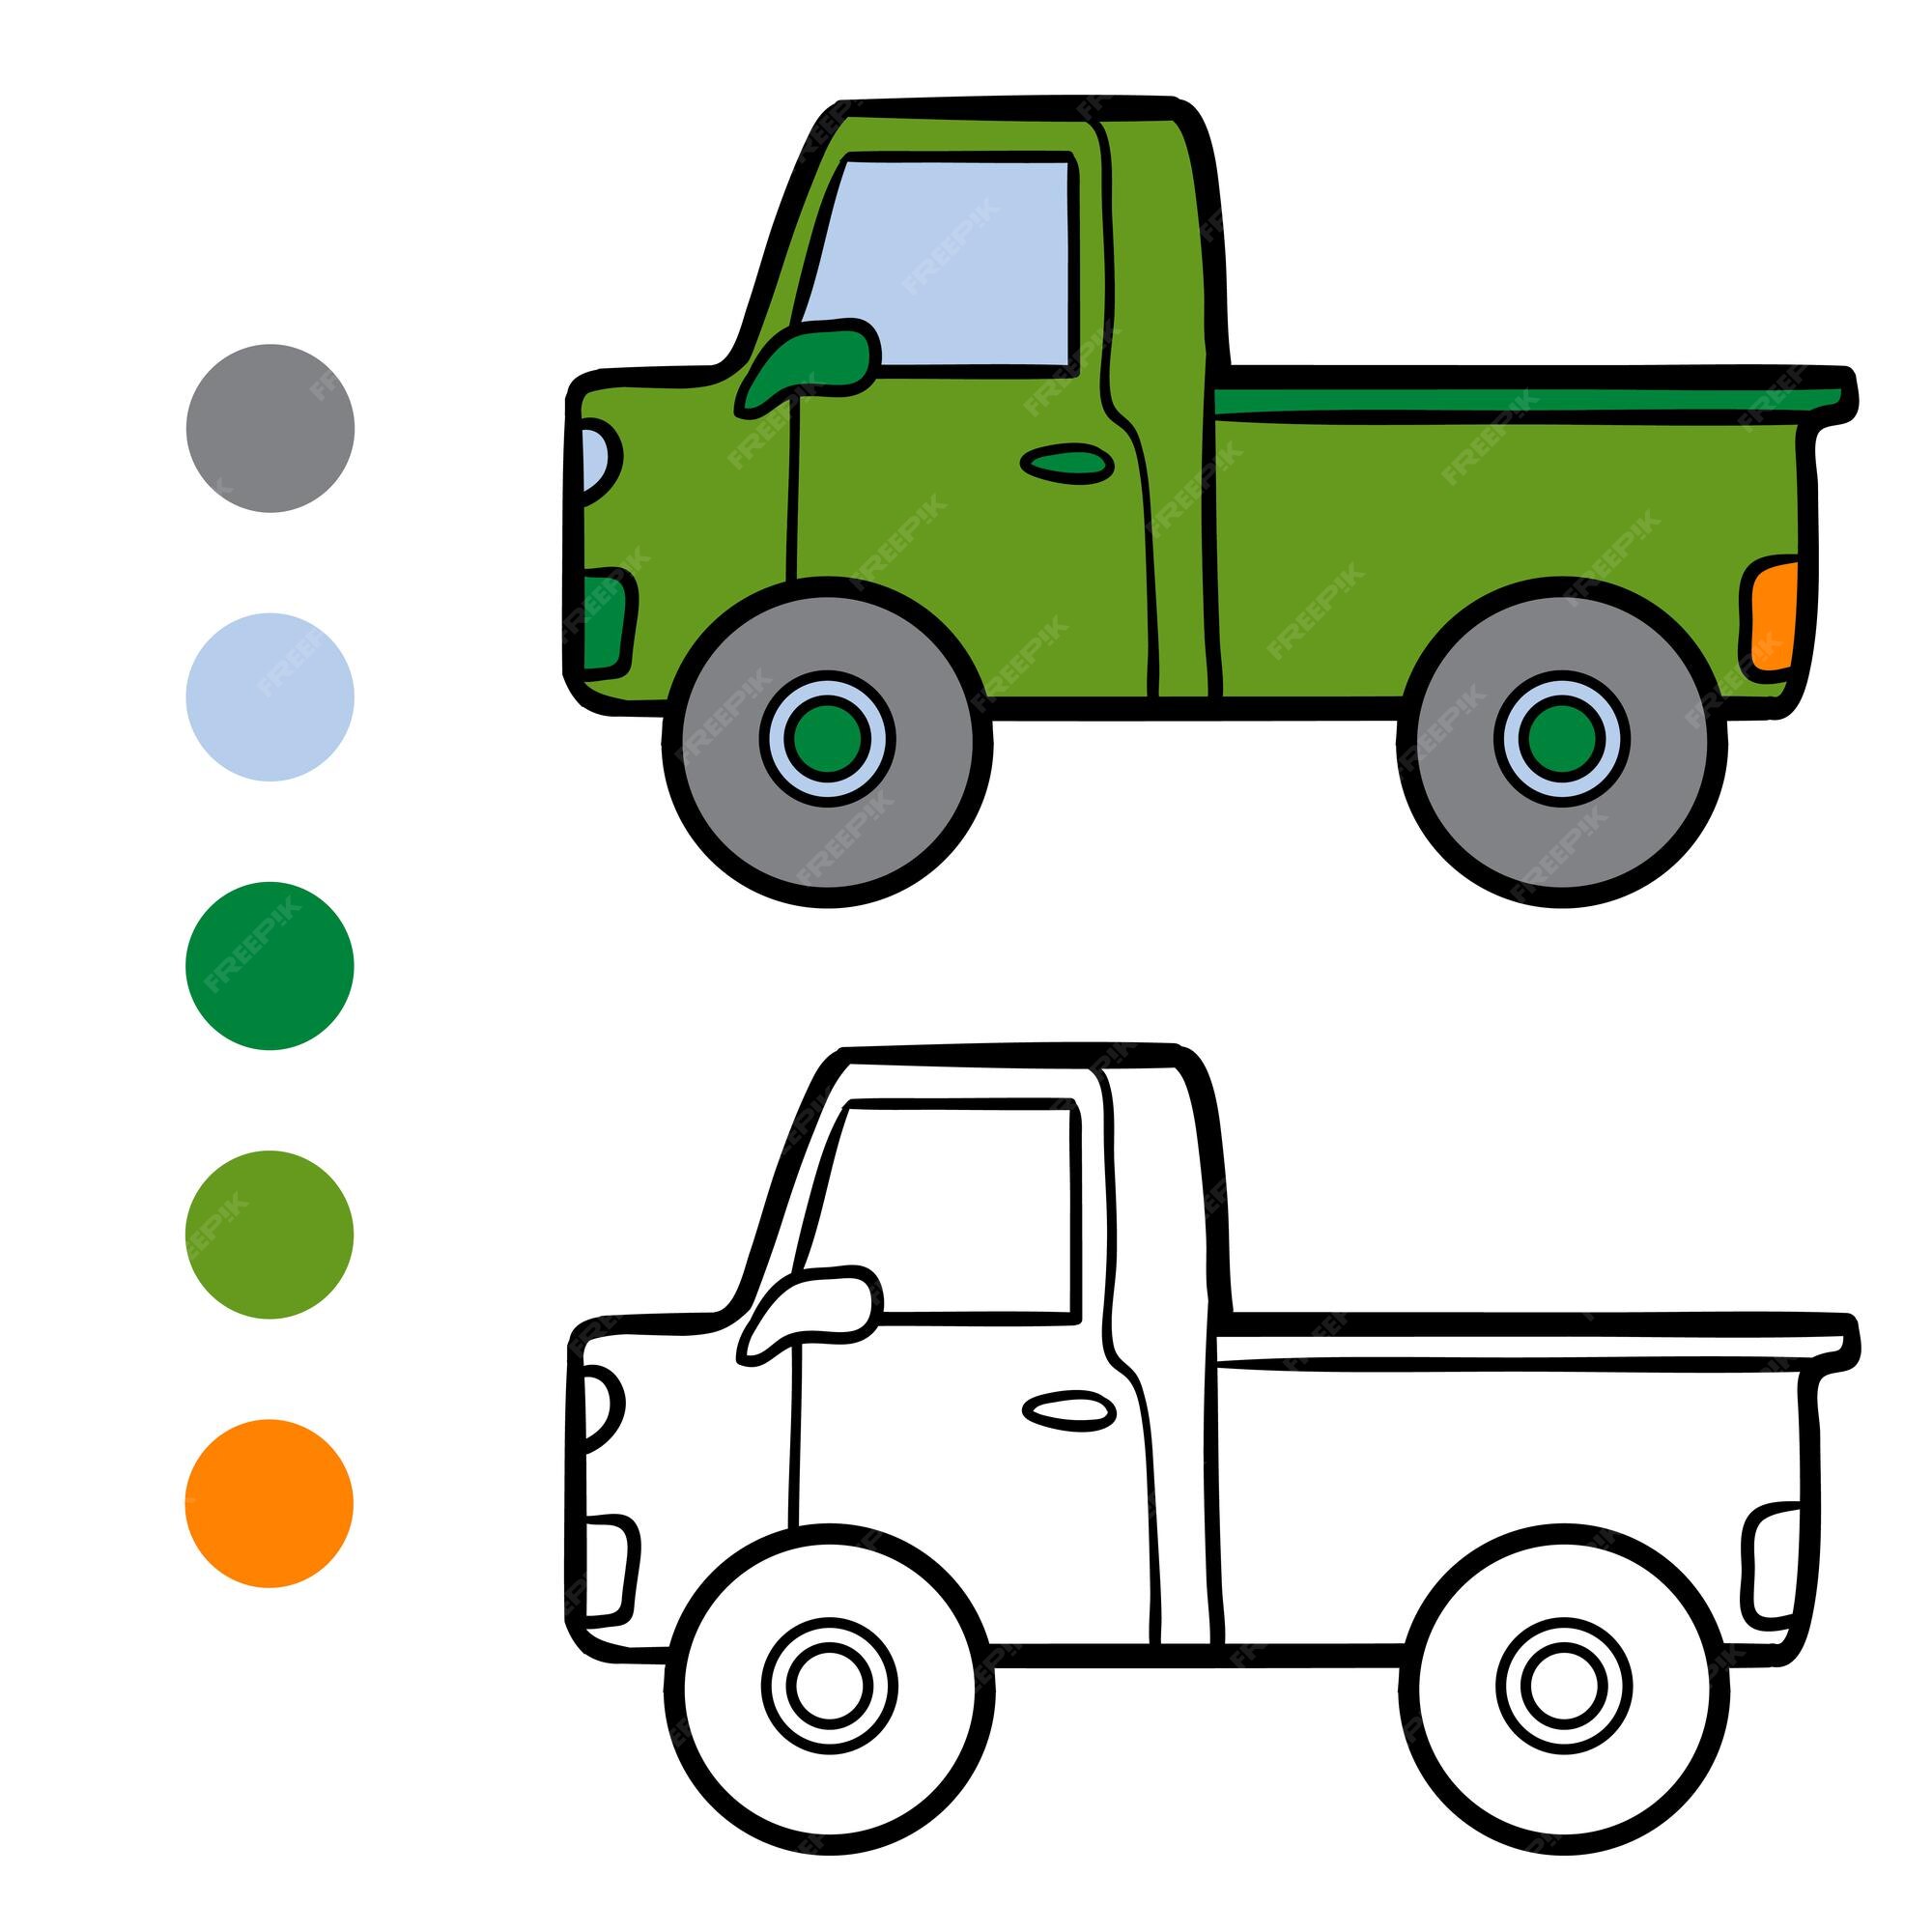 Tự tay tô màu cho chiếc xe tải yêu thích bằng sự sáng tạo của bạn. Hãy cùng khám phá những nhu cầu và sở thích cá nhân của bạn trong việc tô màu cho chiếc xe tải này. Không chỉ đơn giản là tô màu, đây còn là cơ hội để bạn thể hiện tính sáng tạo và tạo ra một tác phẩm ý nghĩa!